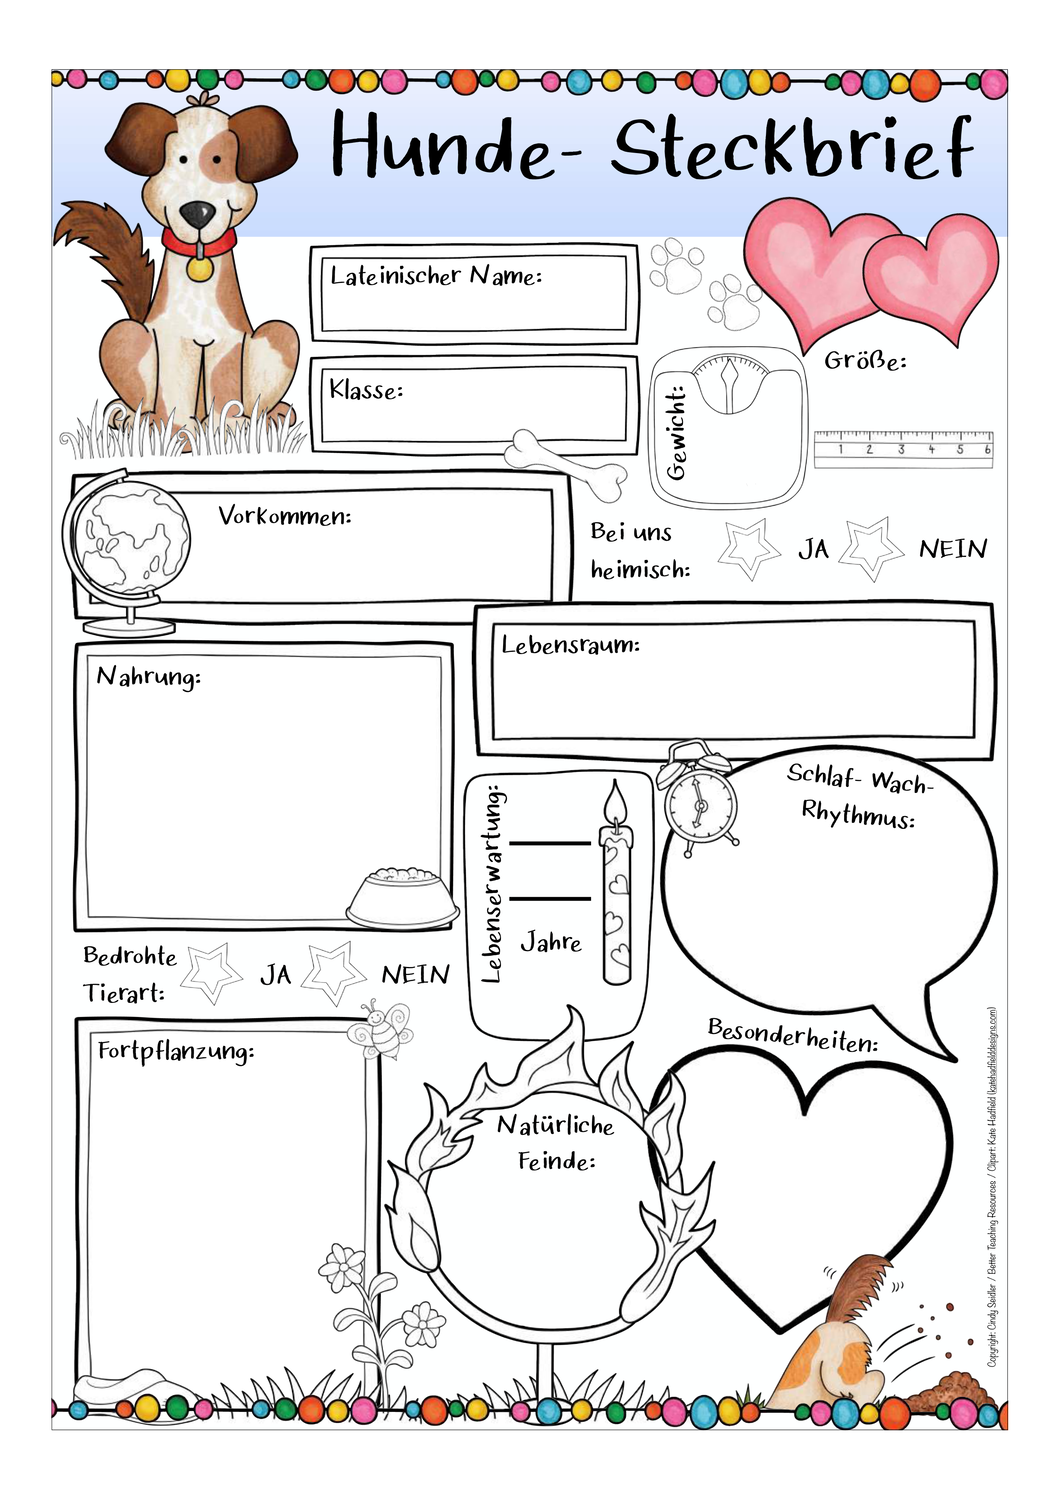 Steckbrief Hunde Unterrichtsmaterial Im Fach Sachunterricht Haustier Adoption Hund Steckbrief Hunde